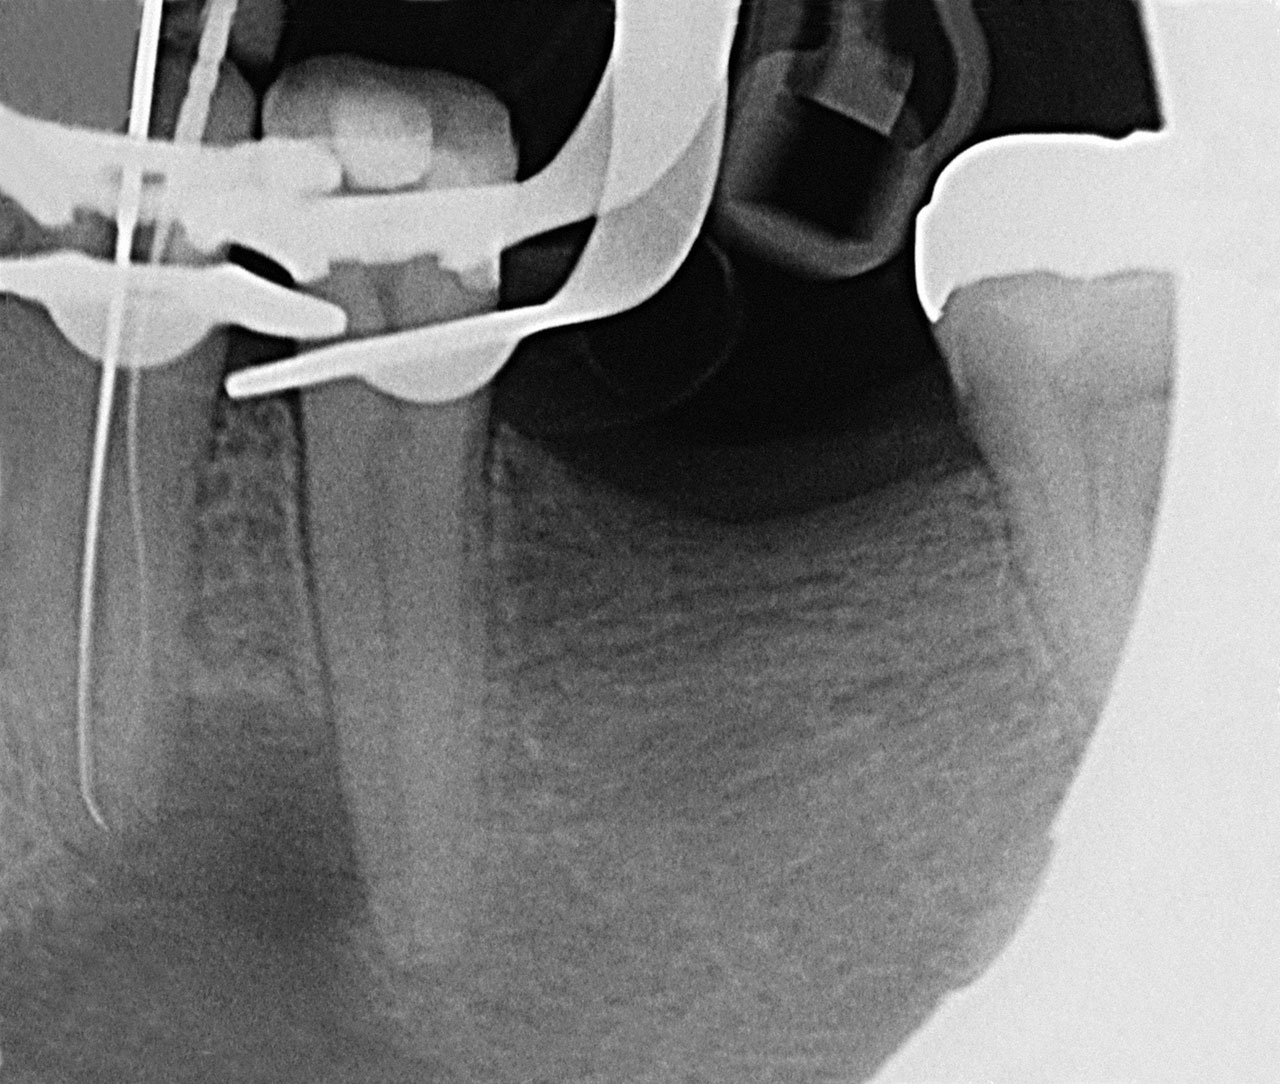 Abb. 4 Röntgenmessaufnahme an Zahn 34.